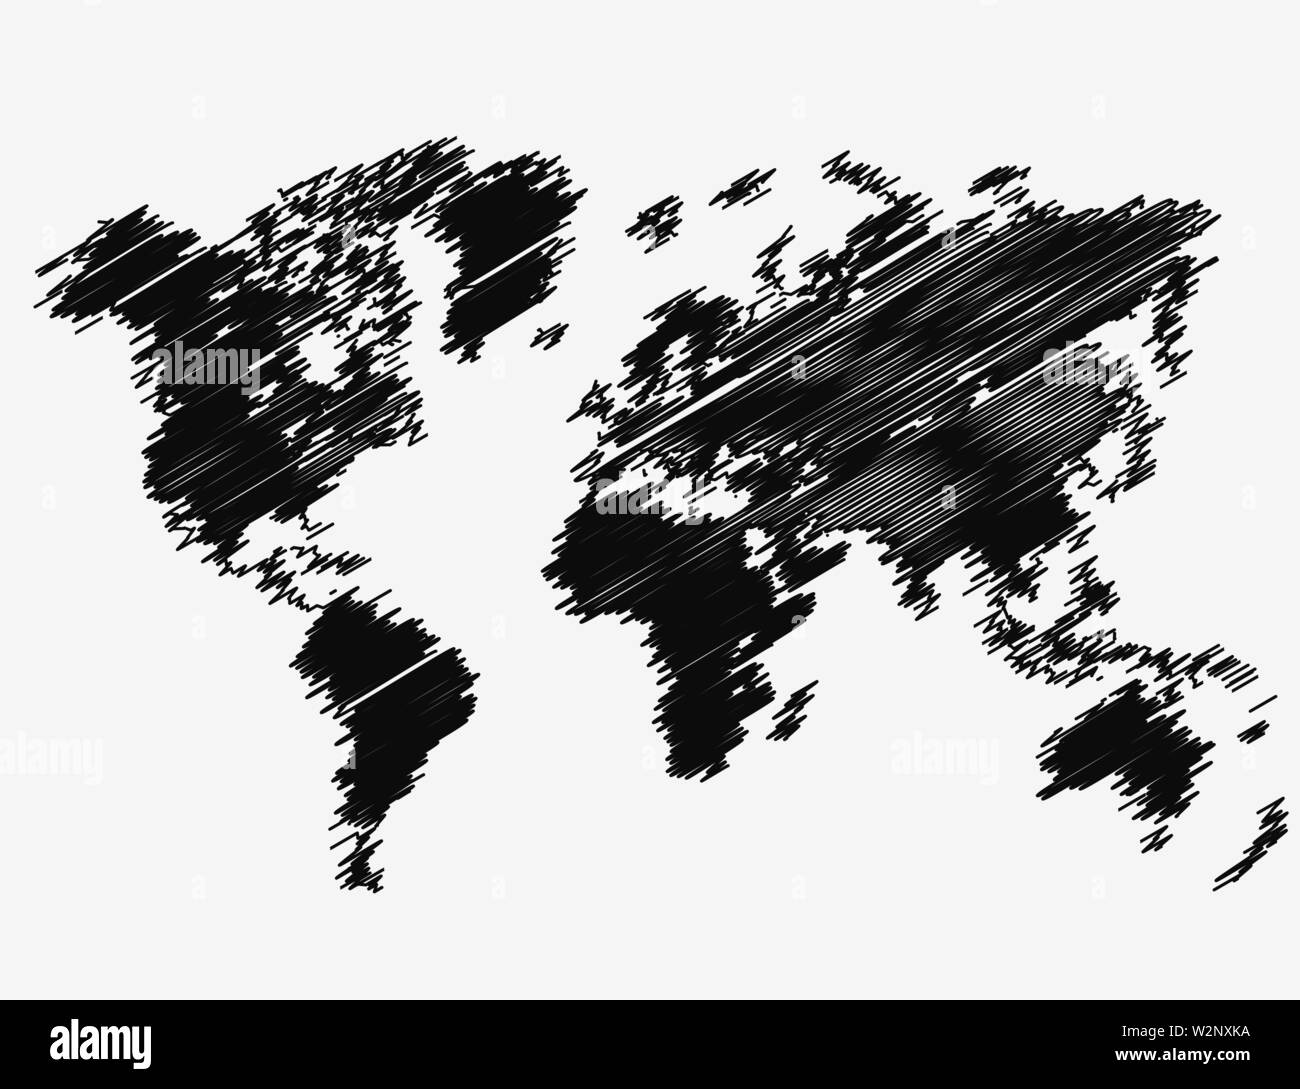 Weltkarte grunge Hintergrund. Vector EPS 10 Abbildung Stock Vektor